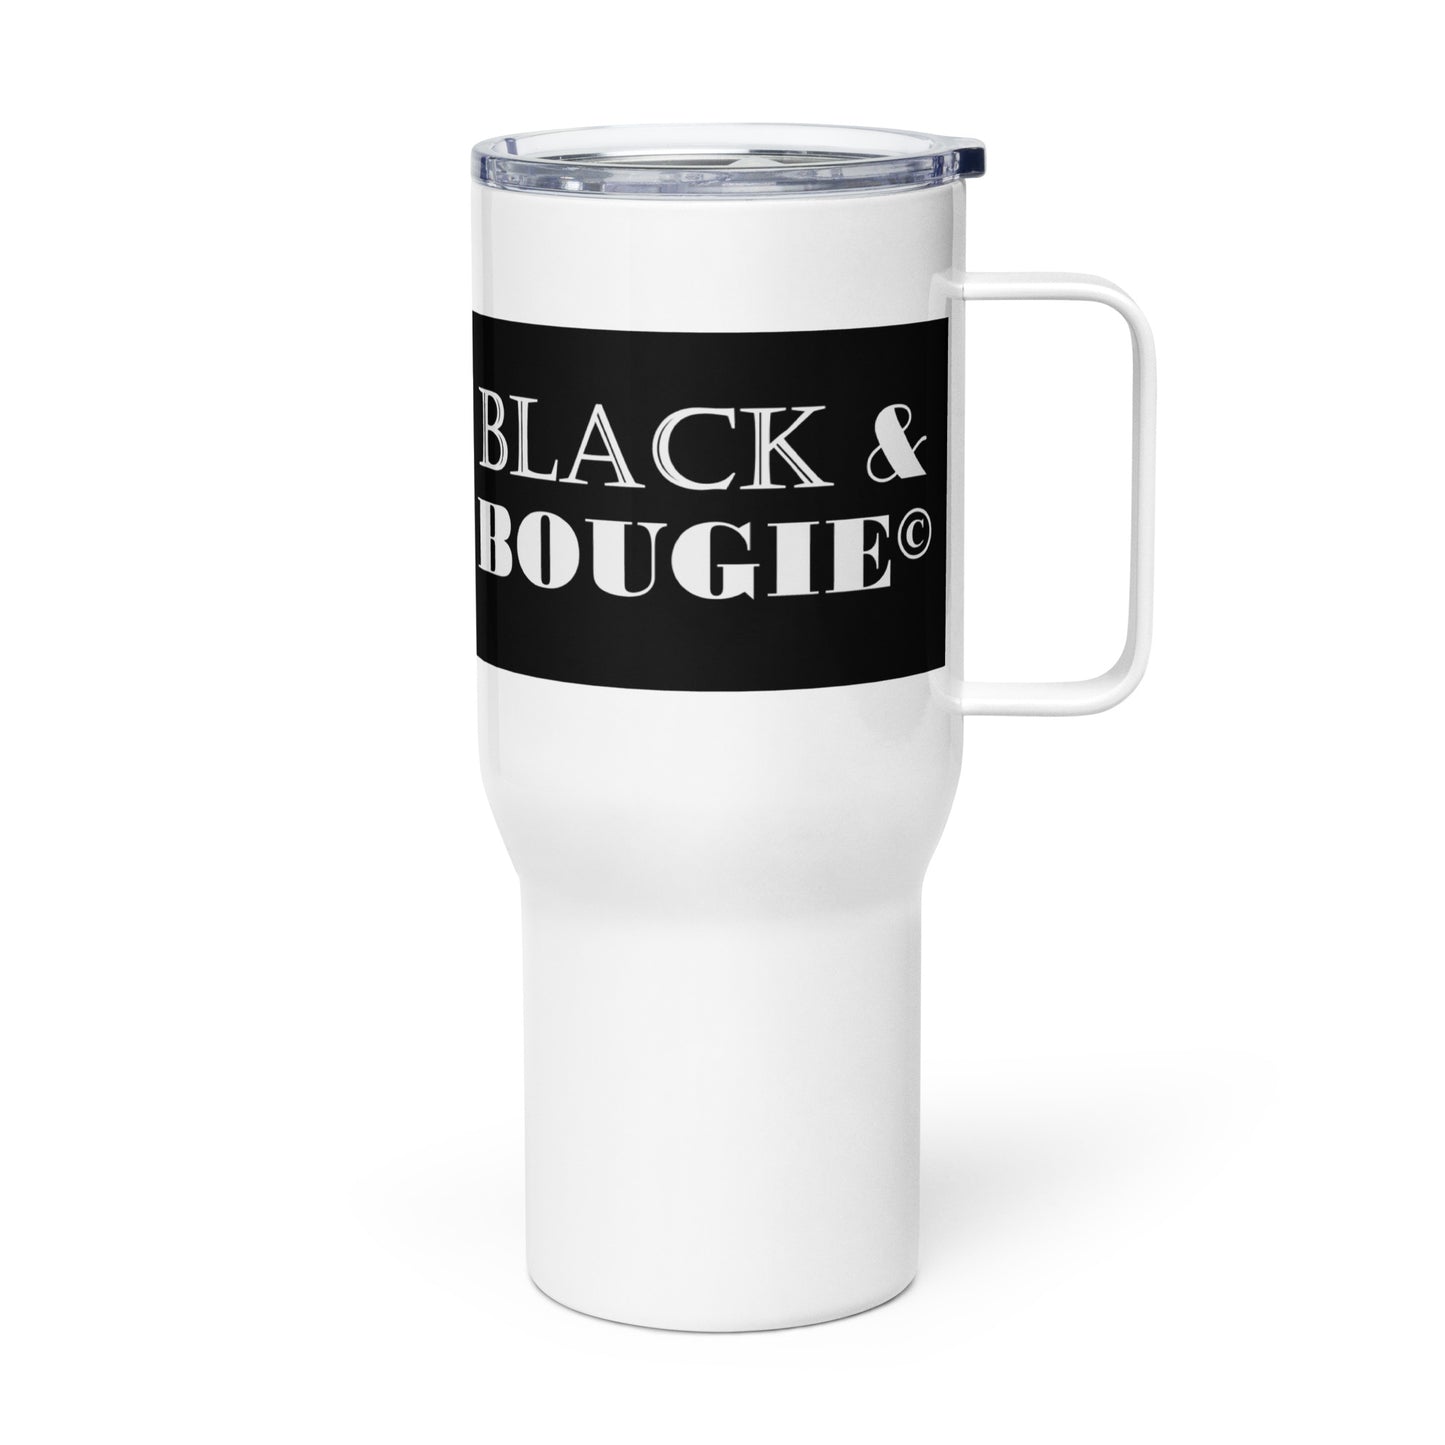 Black & Bougies Travel mug